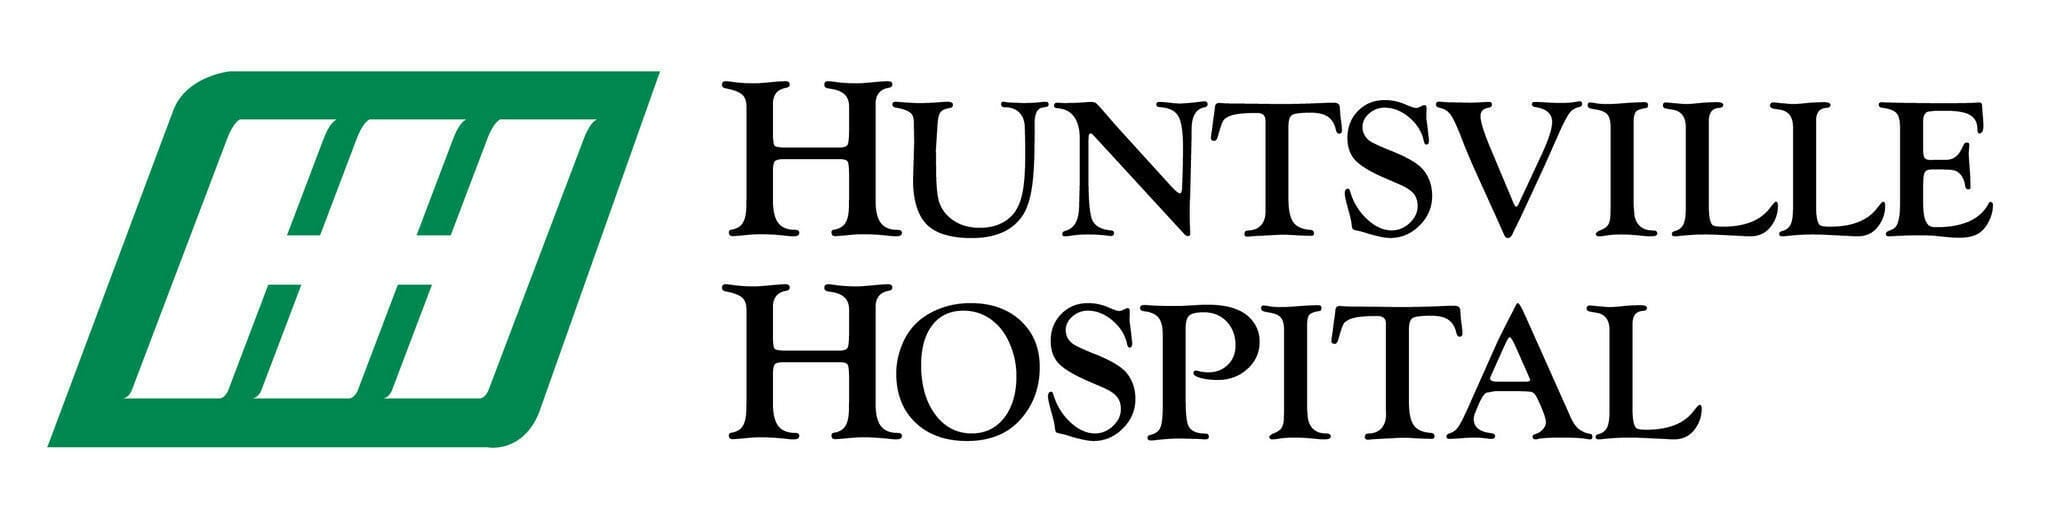 huntsville-hospital-logojpg-175b5de61c6ee365